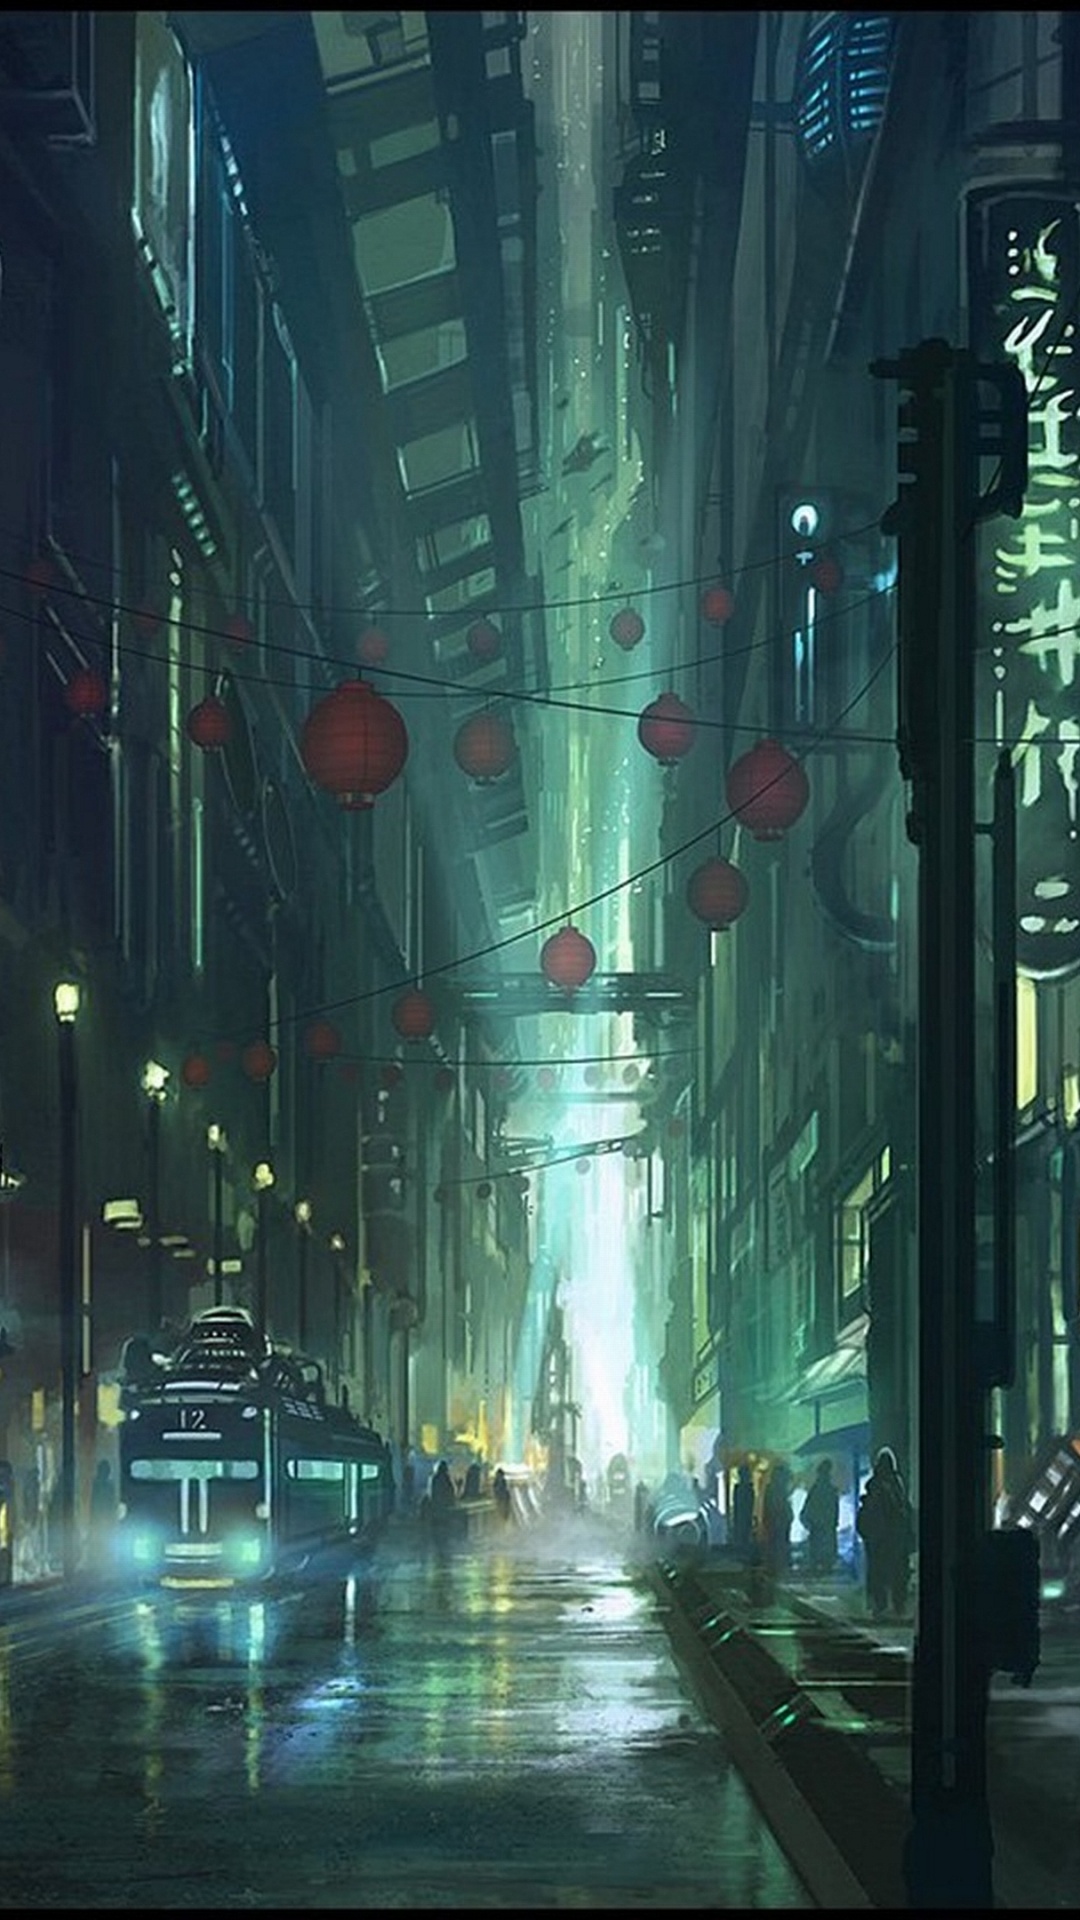 Gente Caminando en la Calle Durante la Noche. Wallpaper in 1080x1920 Resolution